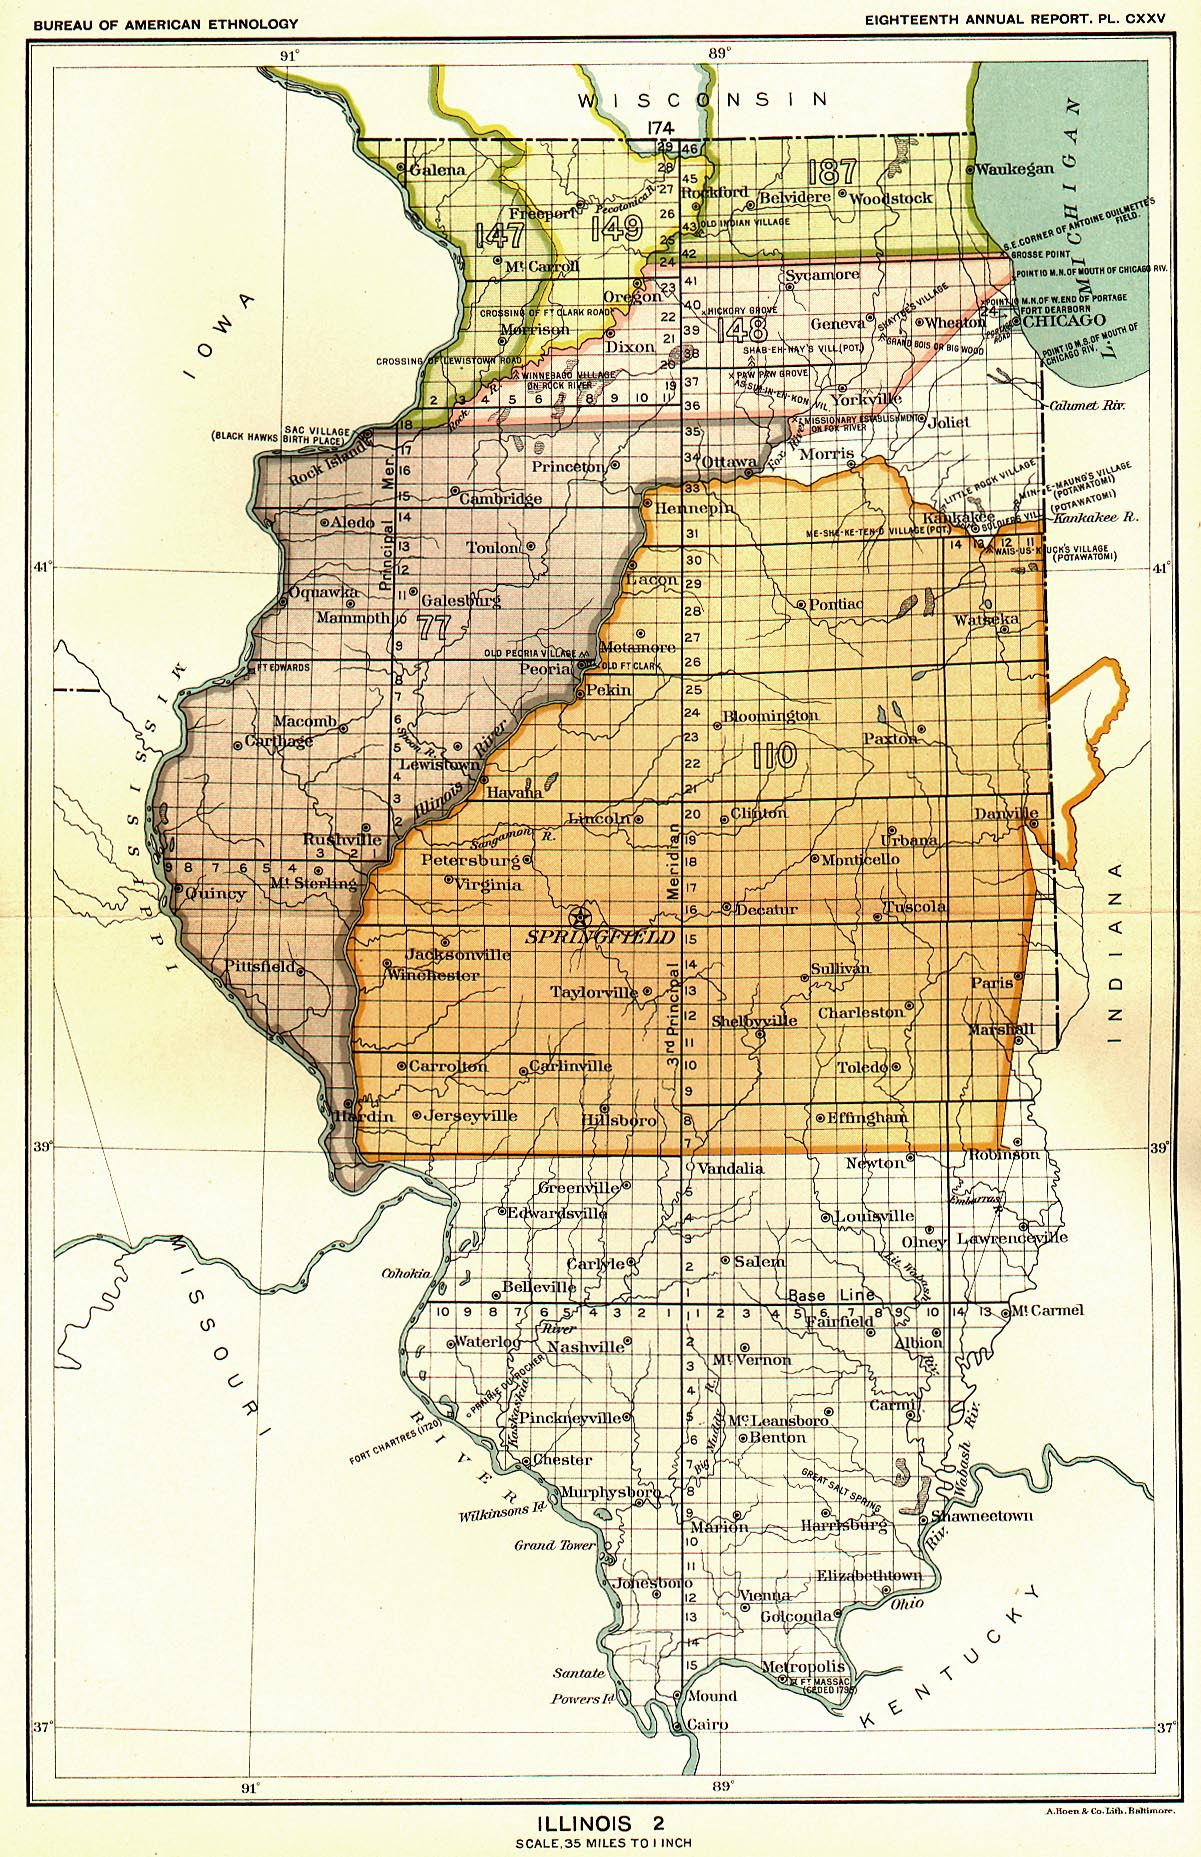 Illinois 2, Map 18